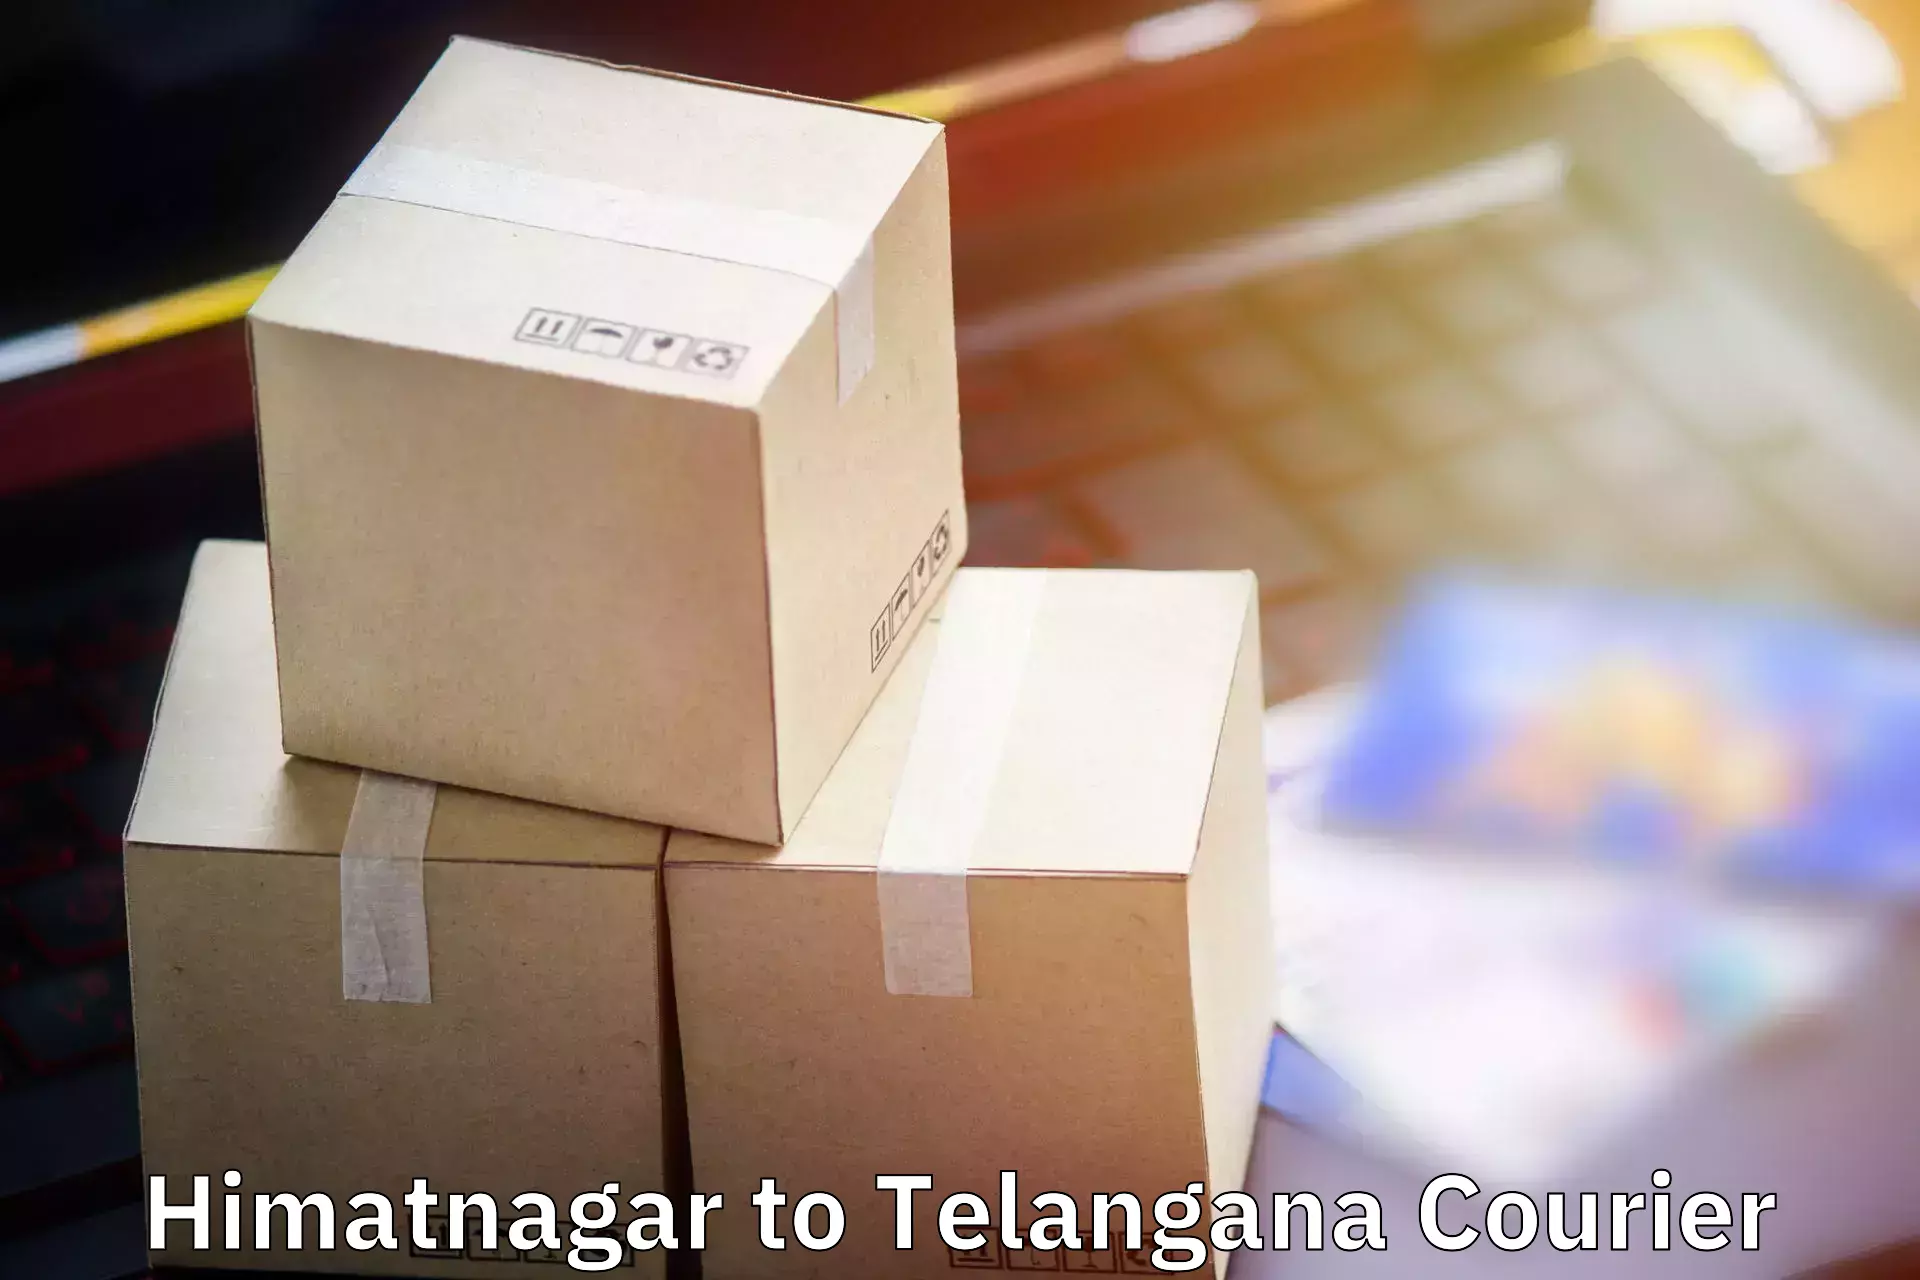 Baggage courier FAQs Himatnagar to Mahabubabad